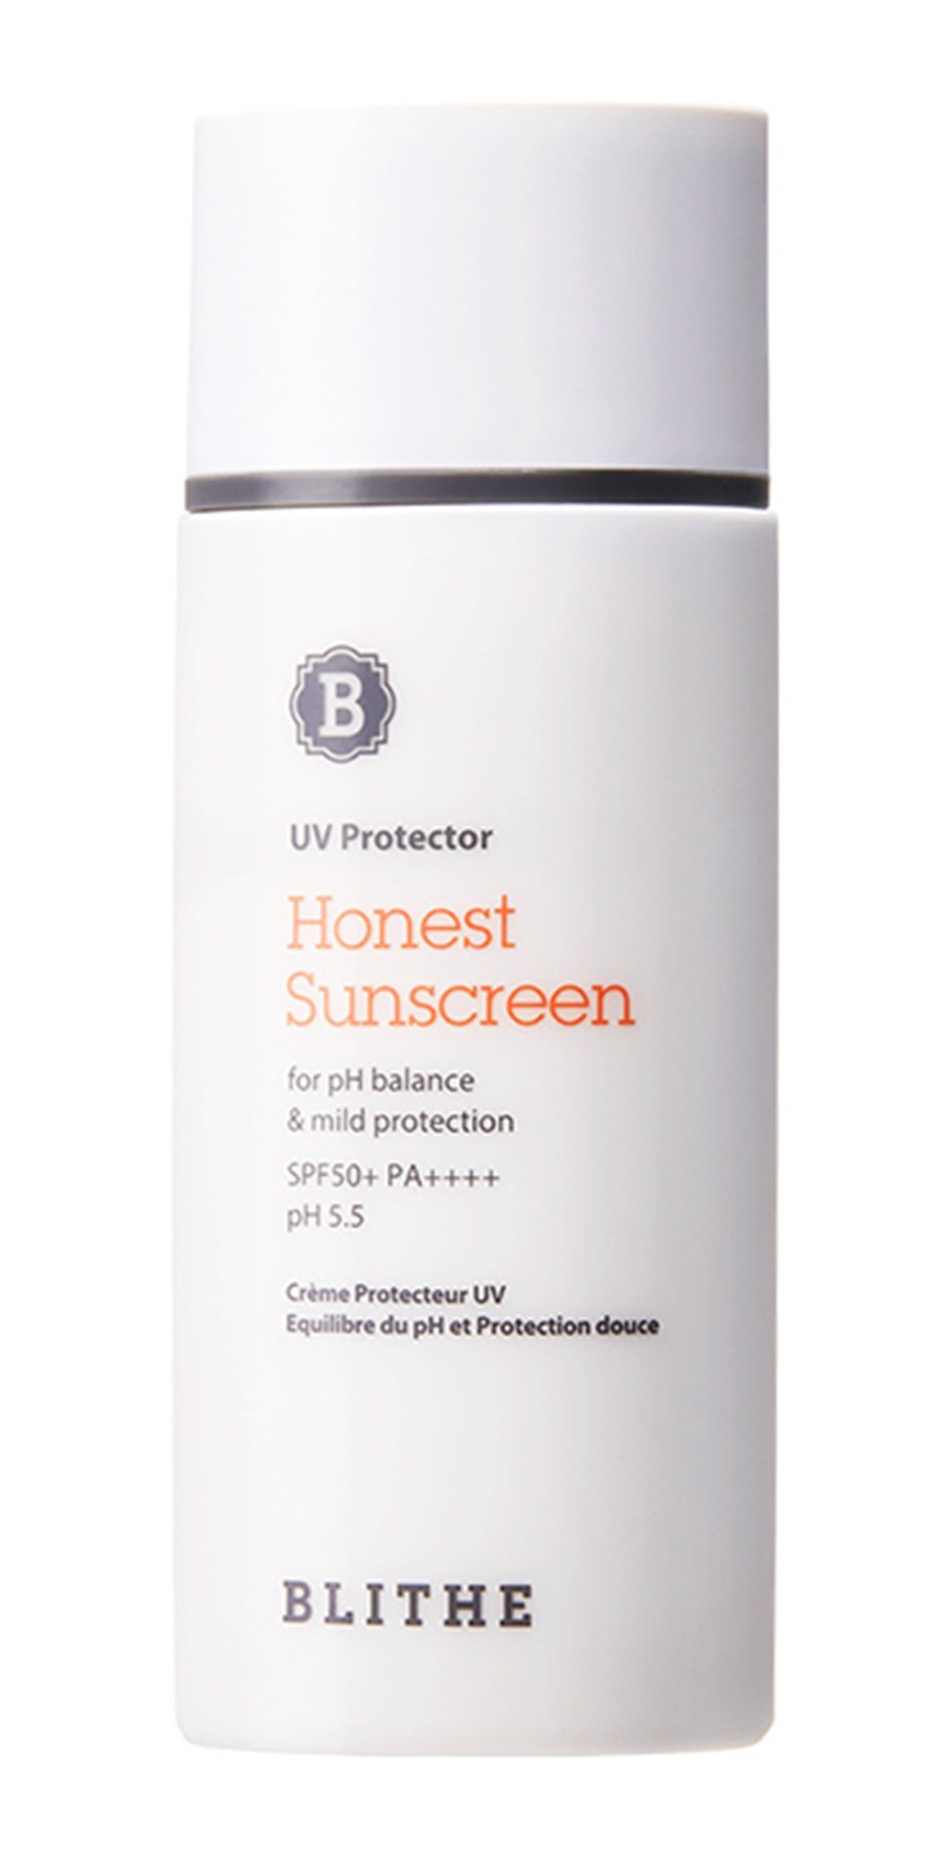 Blithe UV Protector Honest Sunscreen